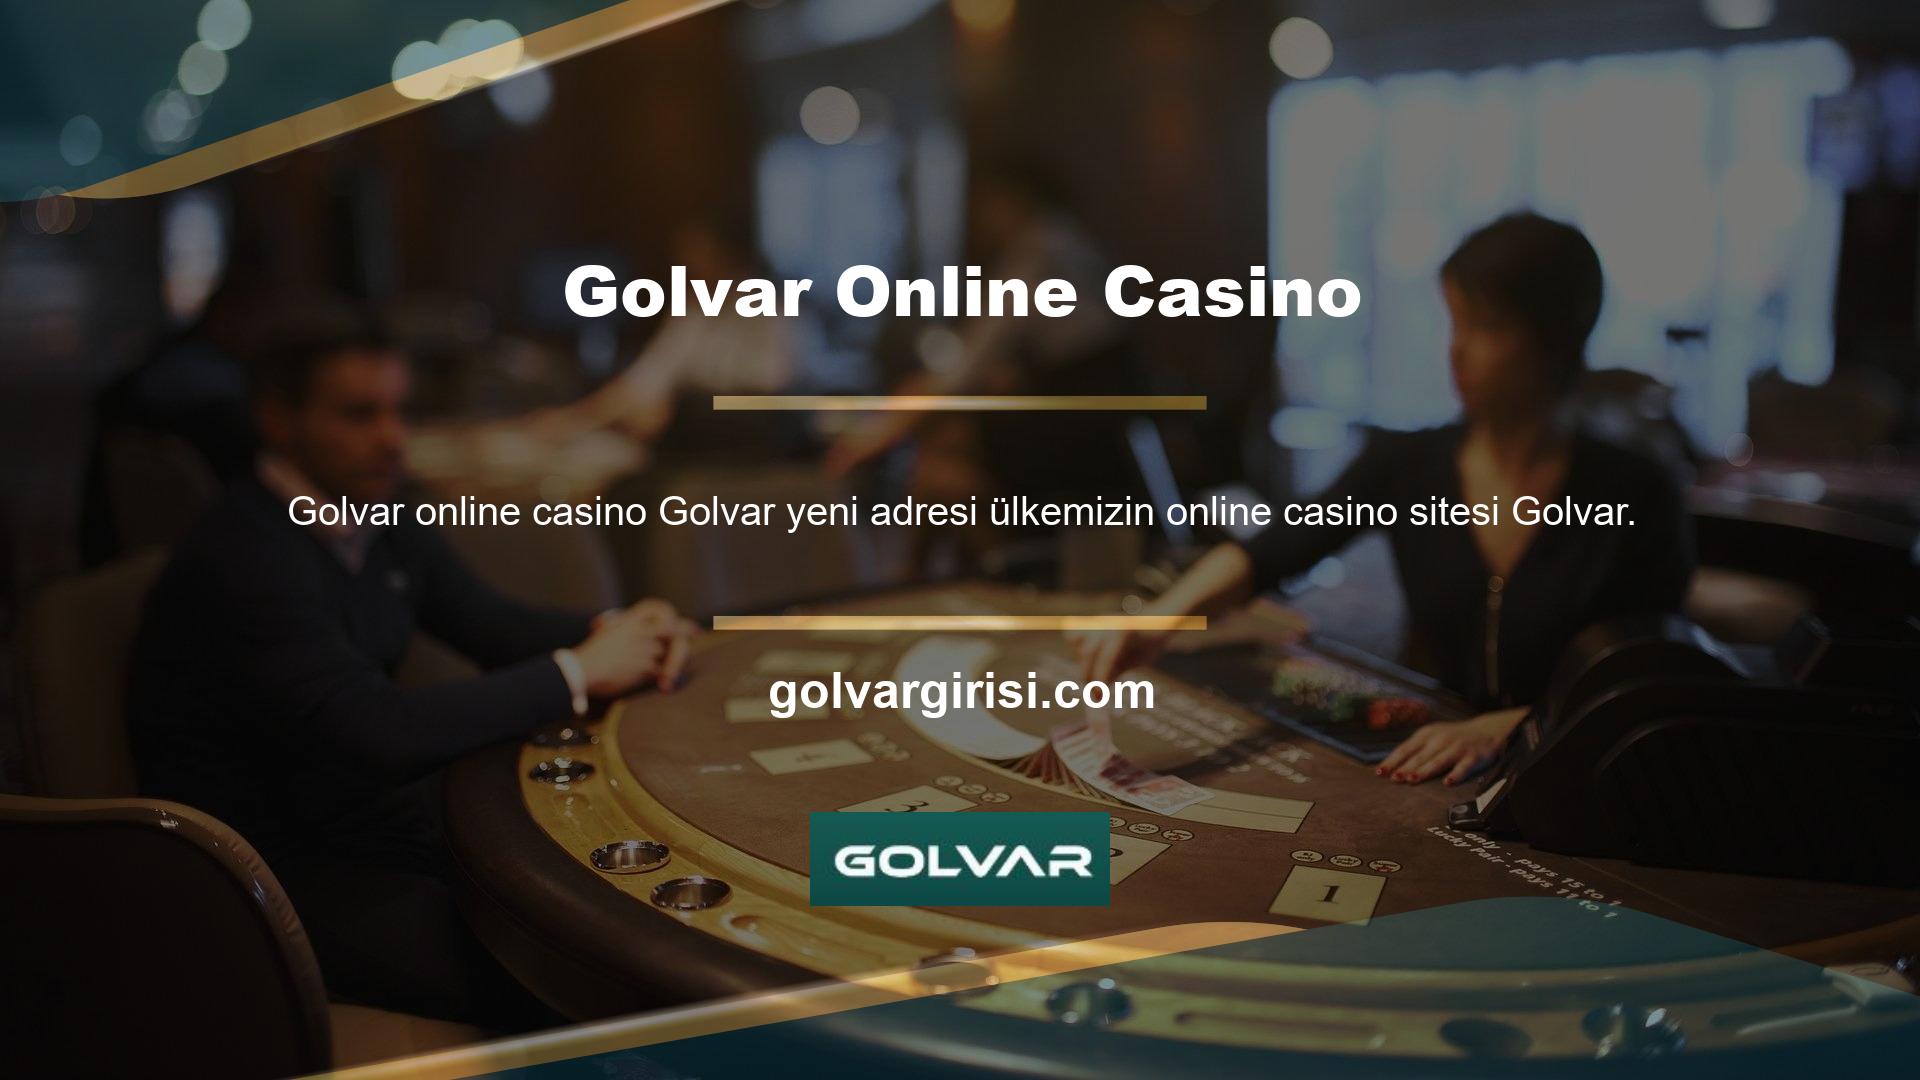 Golvar online casino bingo kazanmak mümkün mü? Kurulduğu günden bu yana hızla büyümüş ve oyuncu memnuniyetini ve hesap güvenliğini ön planda tutarak en popüler bahis sitelerinden biri haline gelmiştir